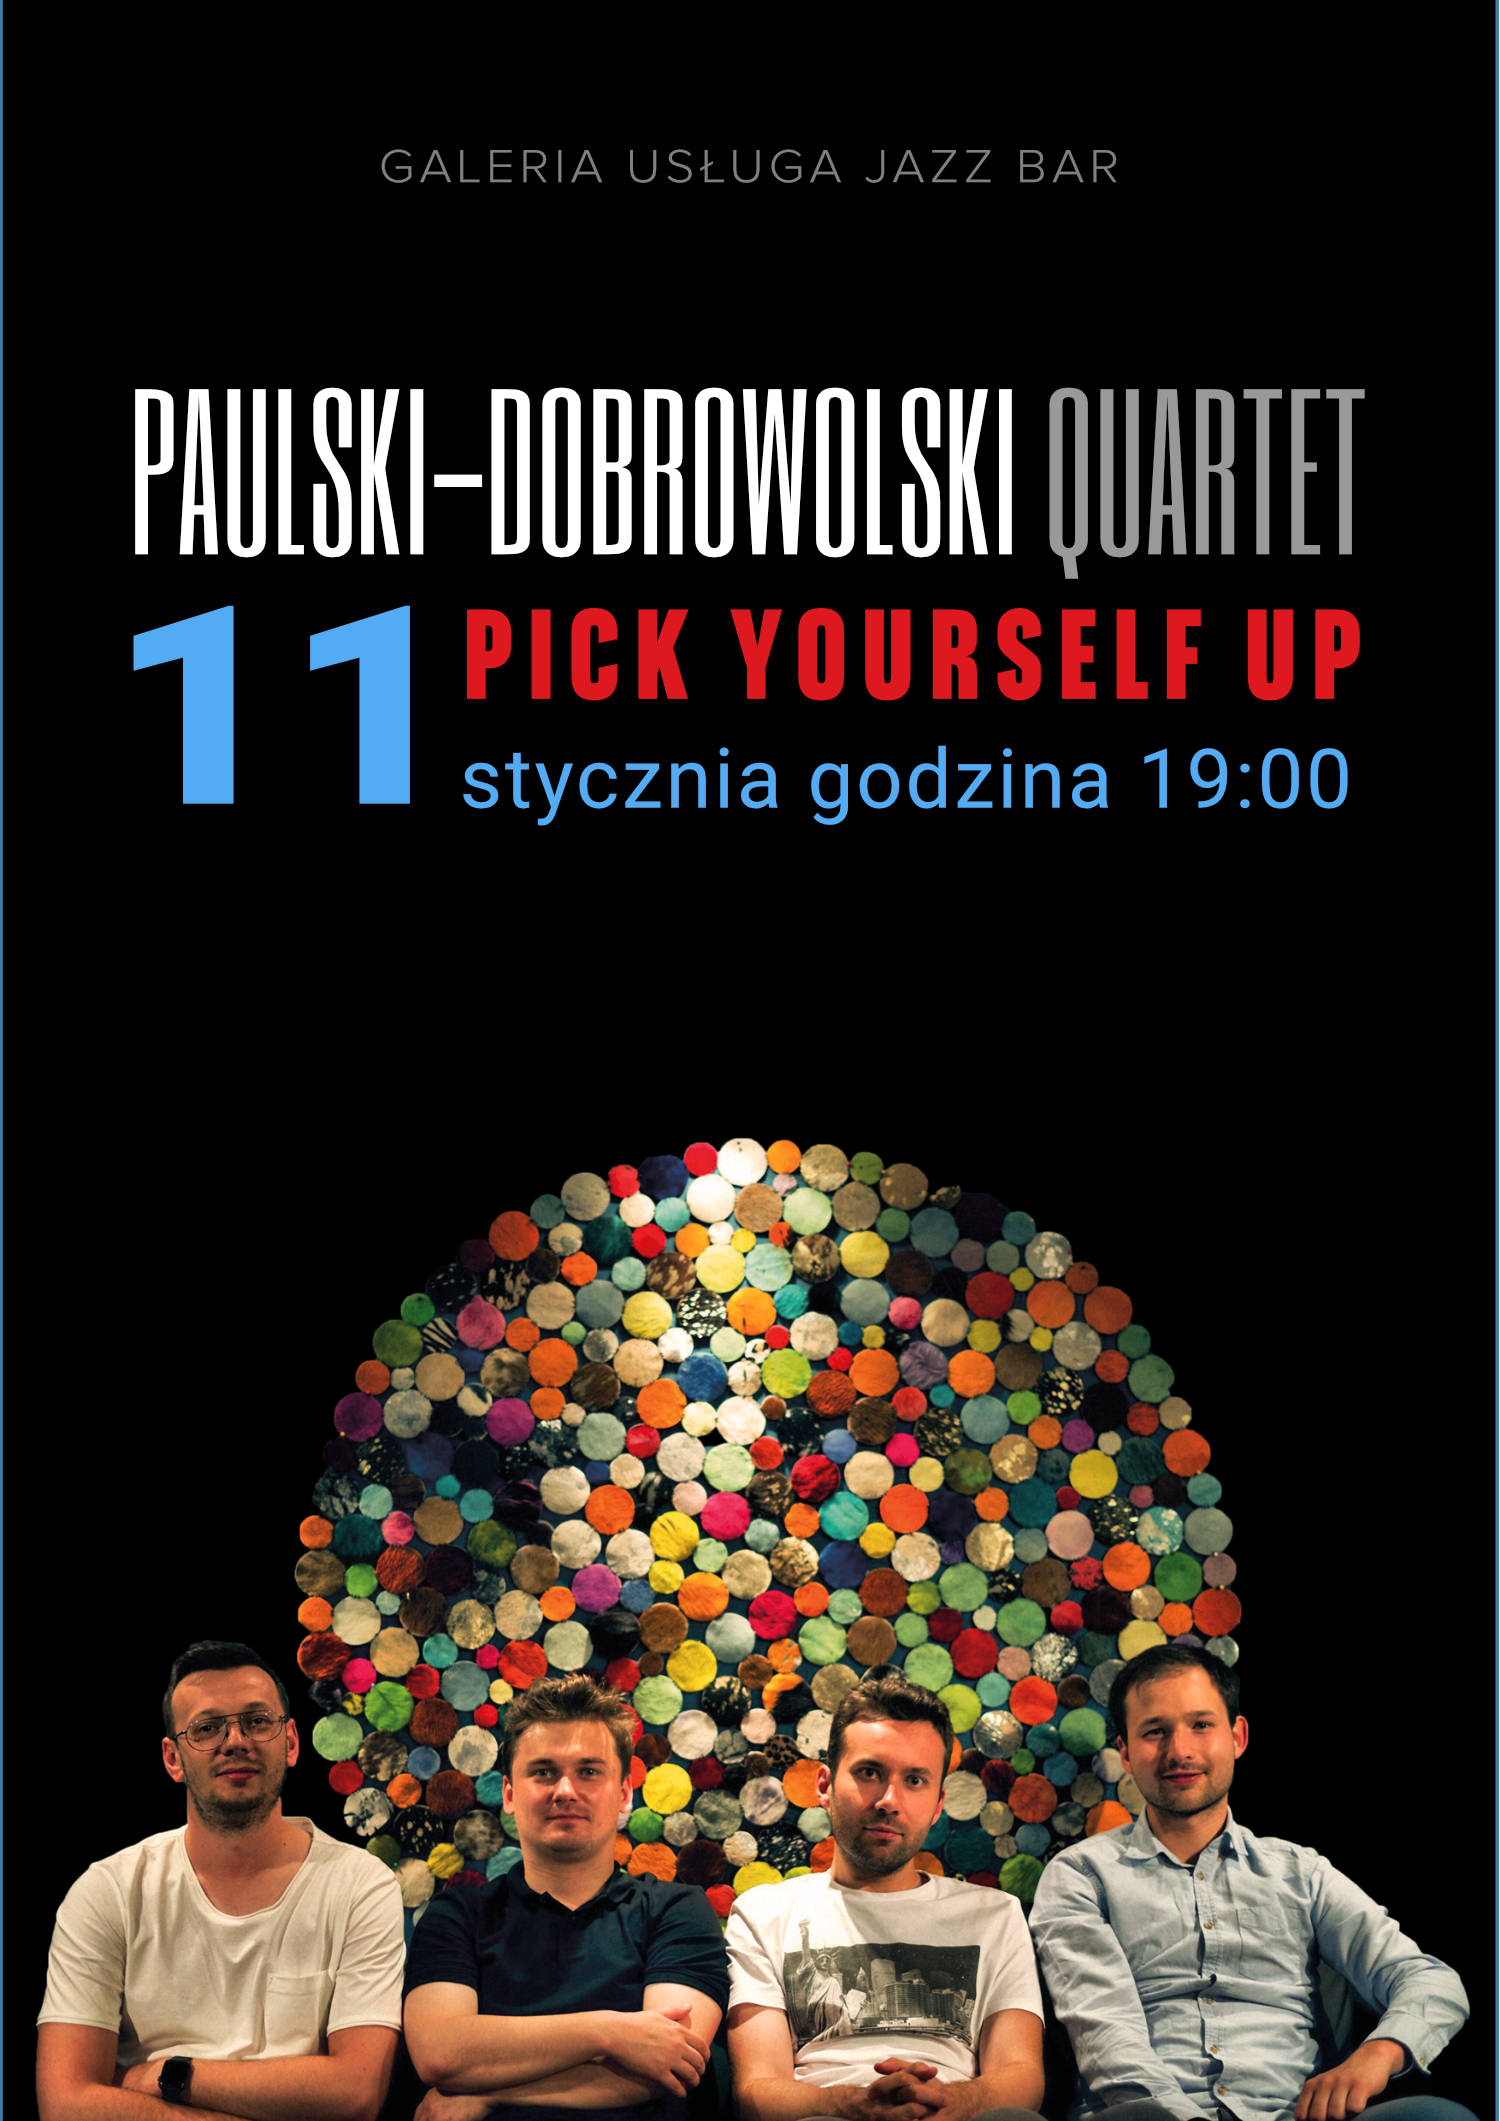 2020-01-11-d0browolski-plakat